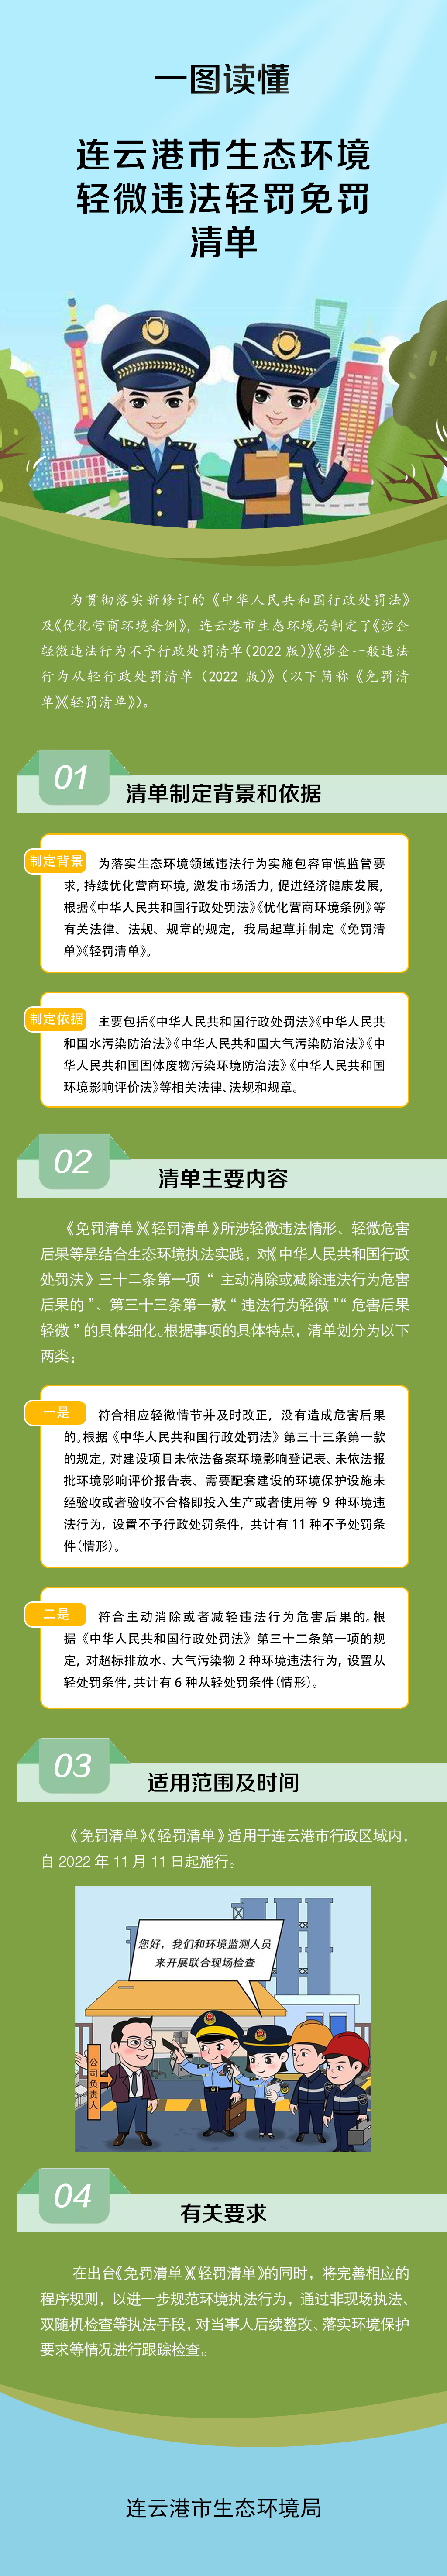 一图读懂《连云港市生态环境违法轻罚免罚清单》.png